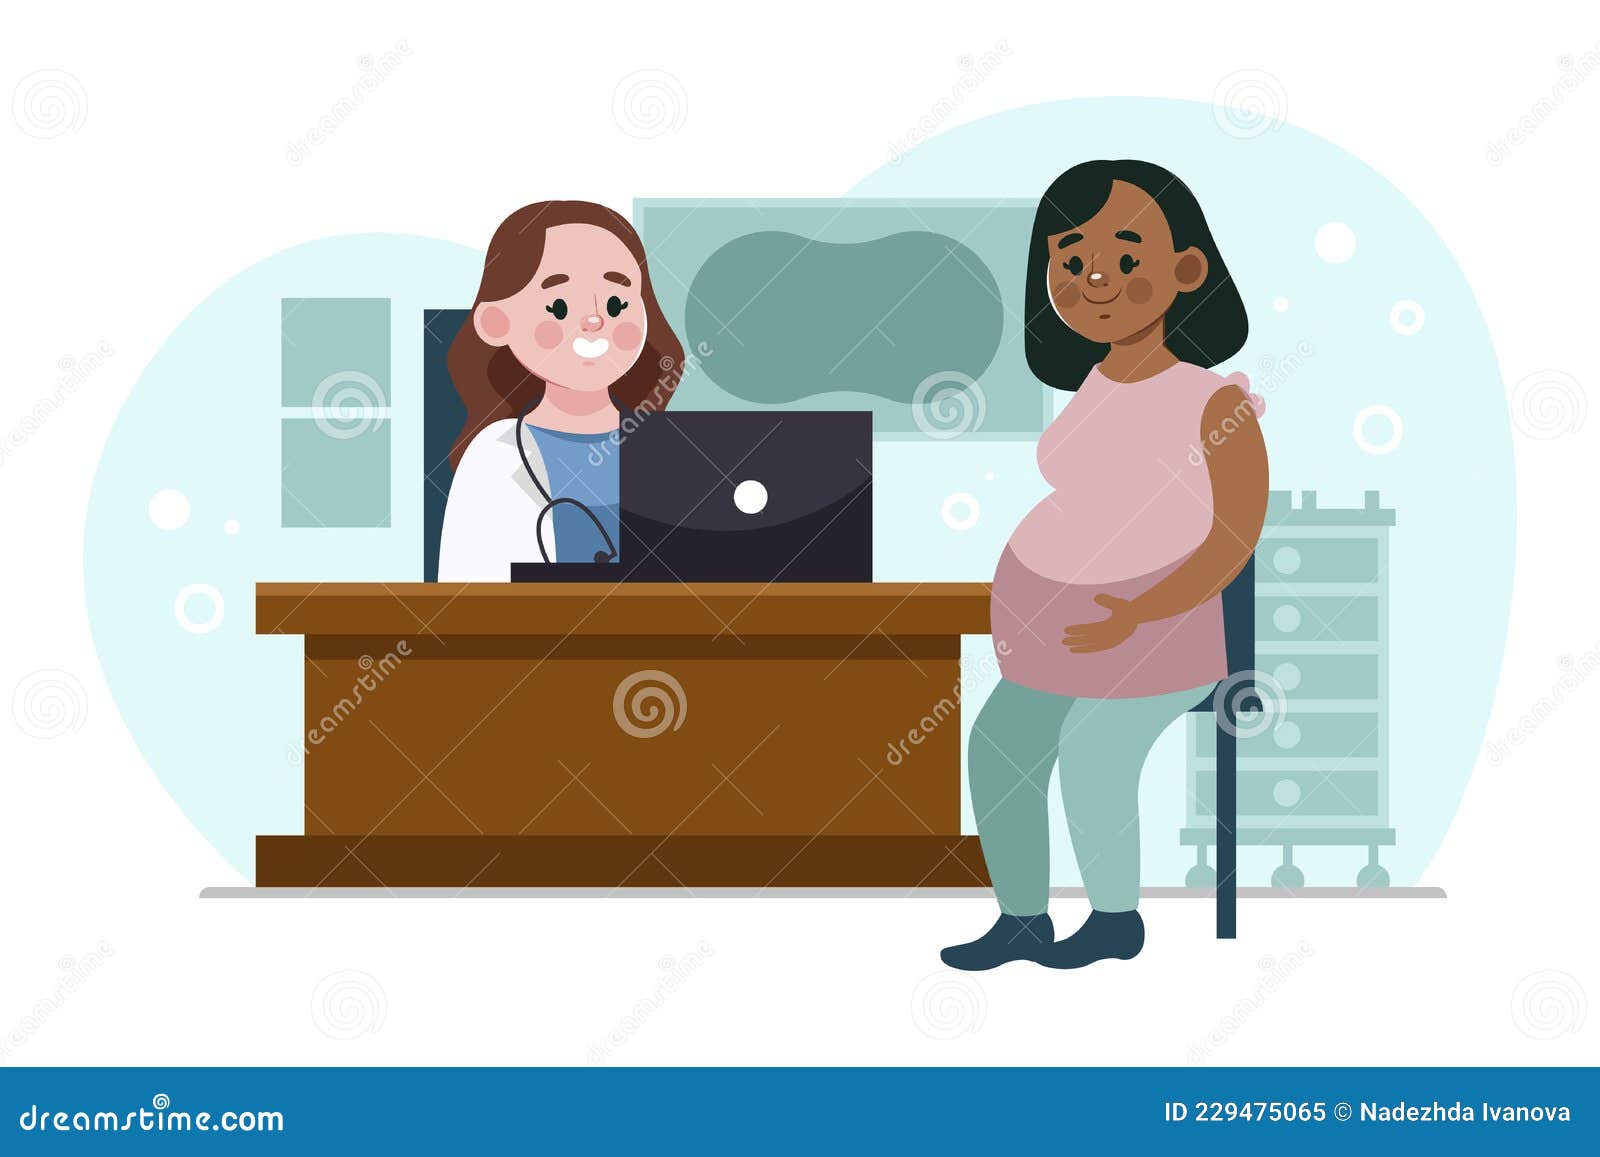 gradient dia internacional de la obstetricia y la embarazada   .